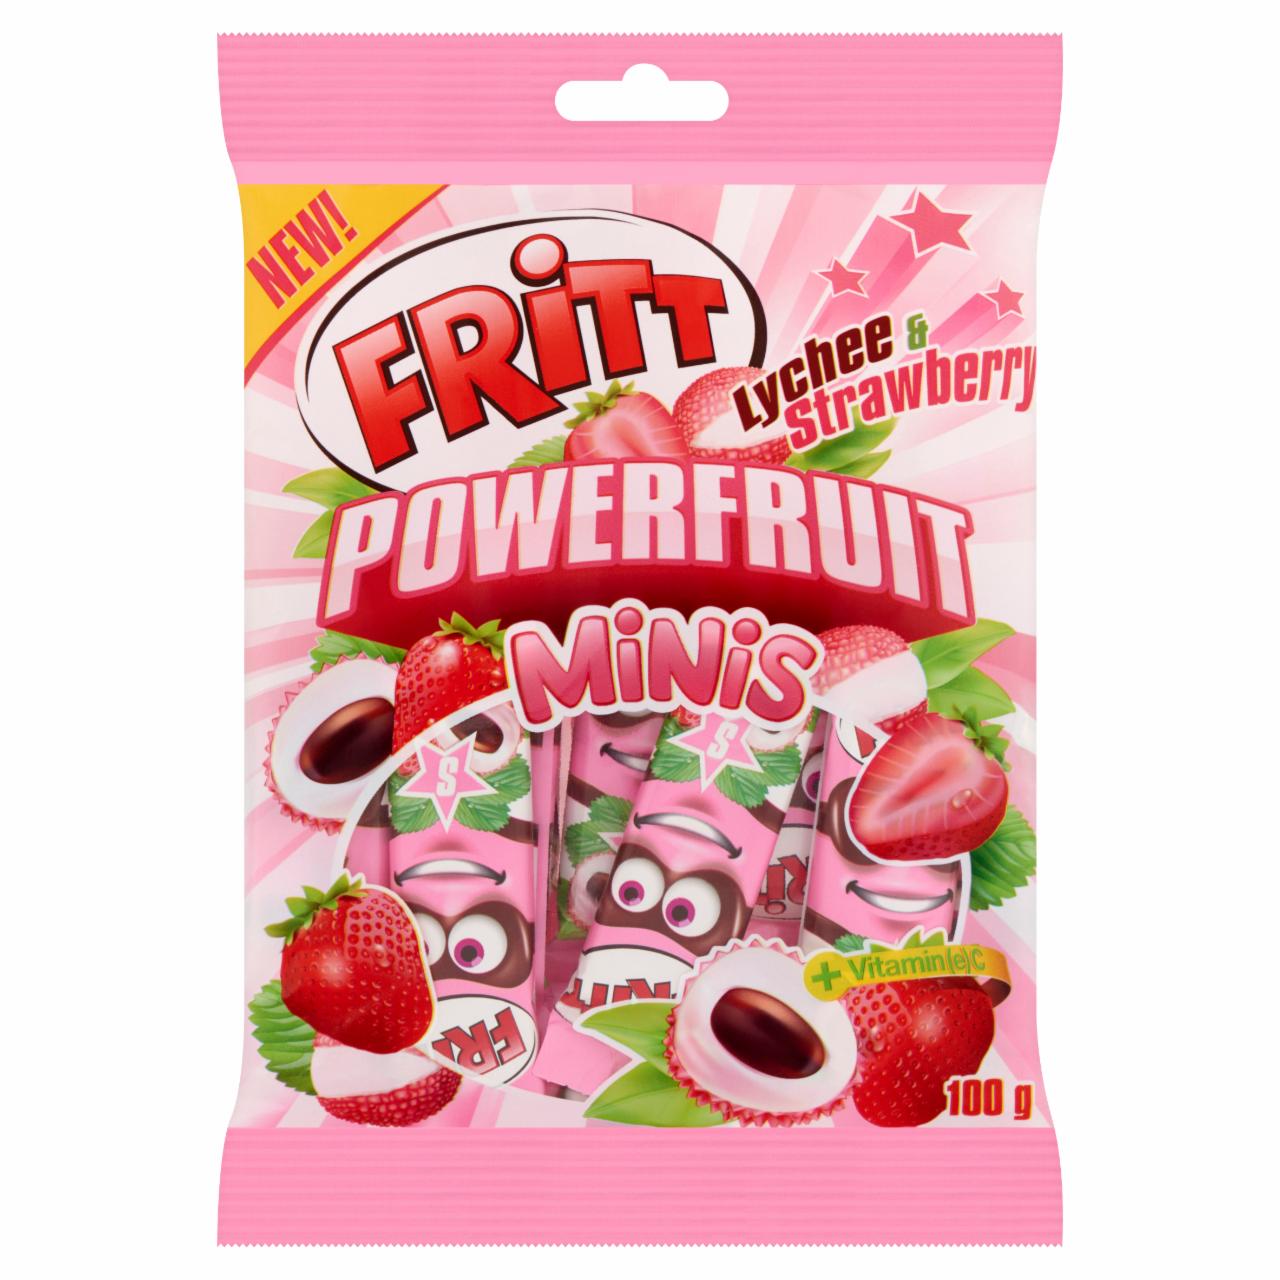 Képek - Fritt Powerfruit Minis licsi és eper ízesítésű rágócukorka C-vitaminnal 100 g